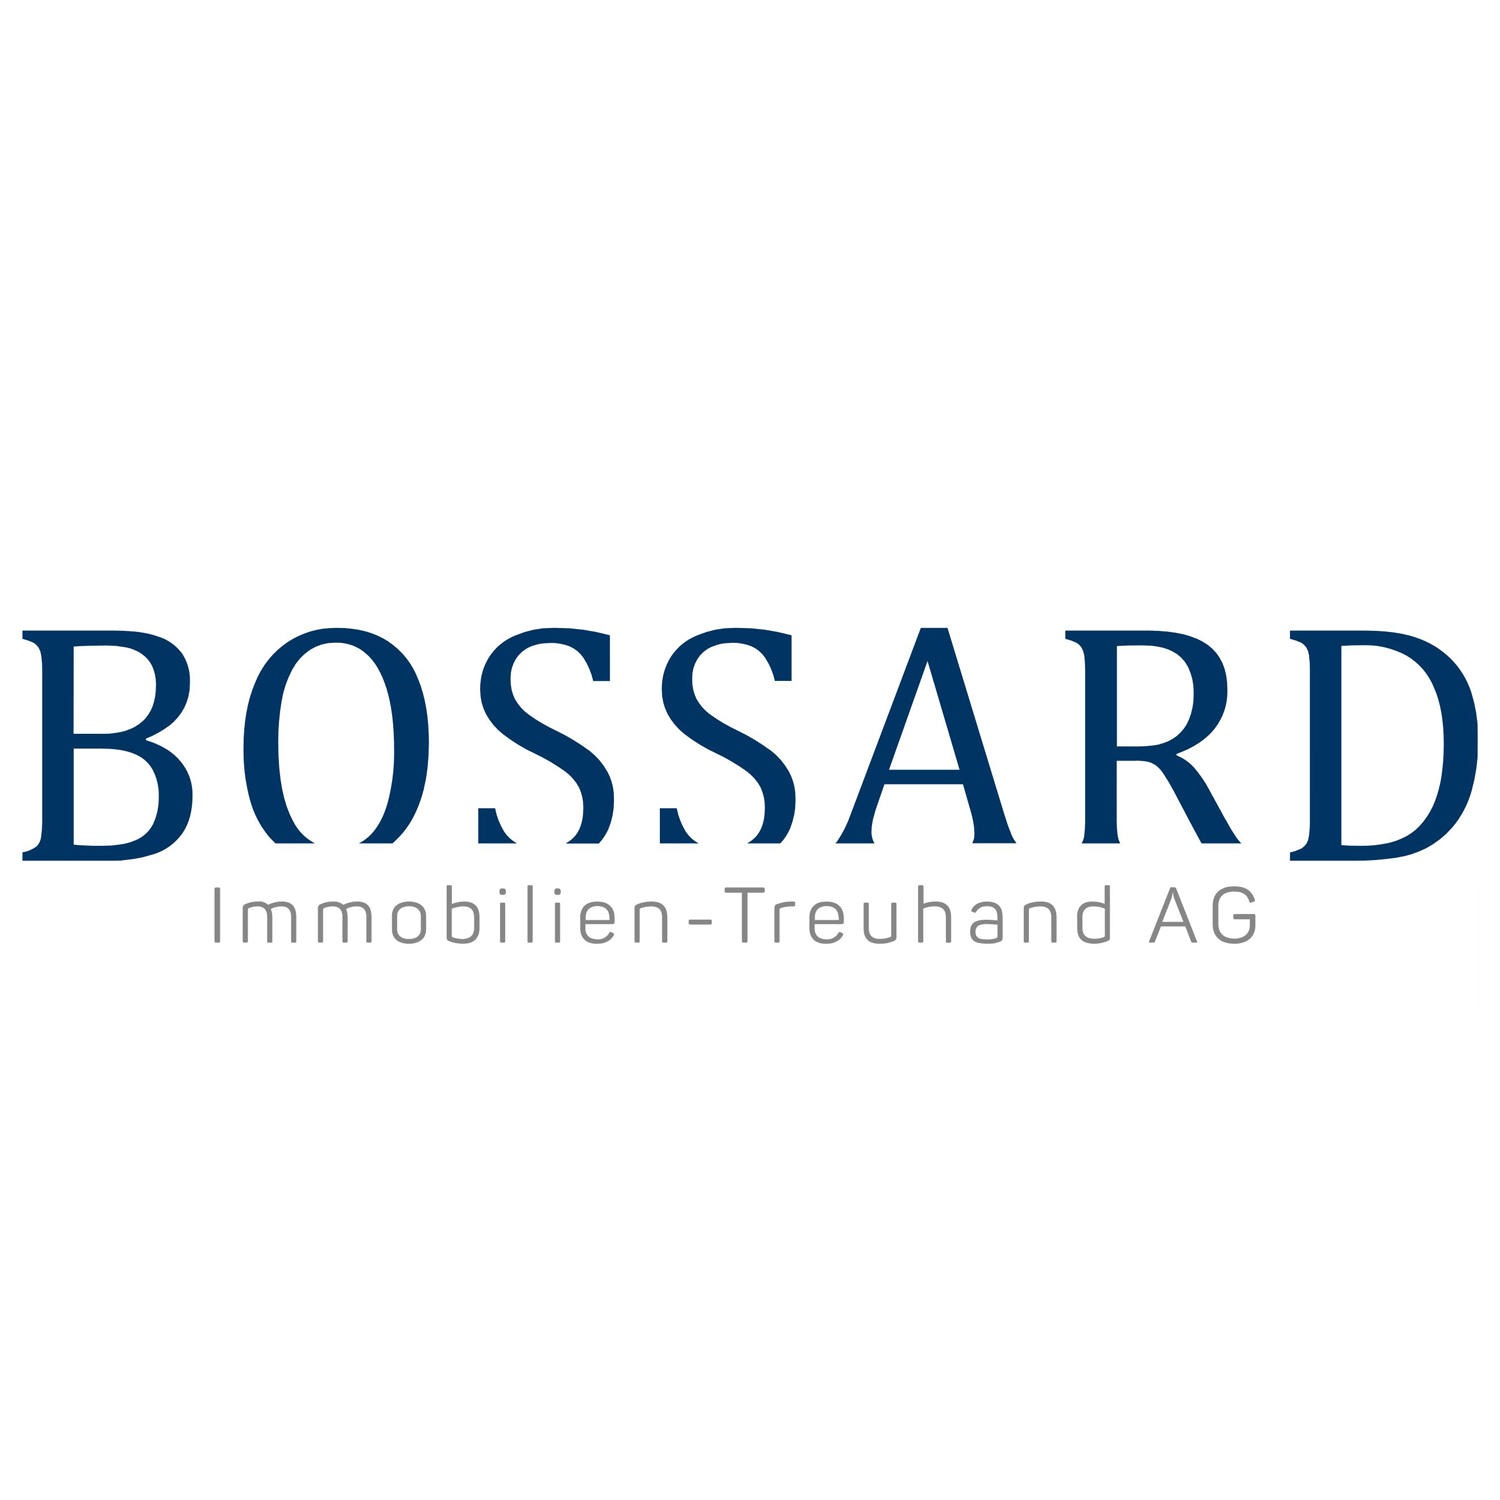 BOSSARD Immobilien-Treuhand AG